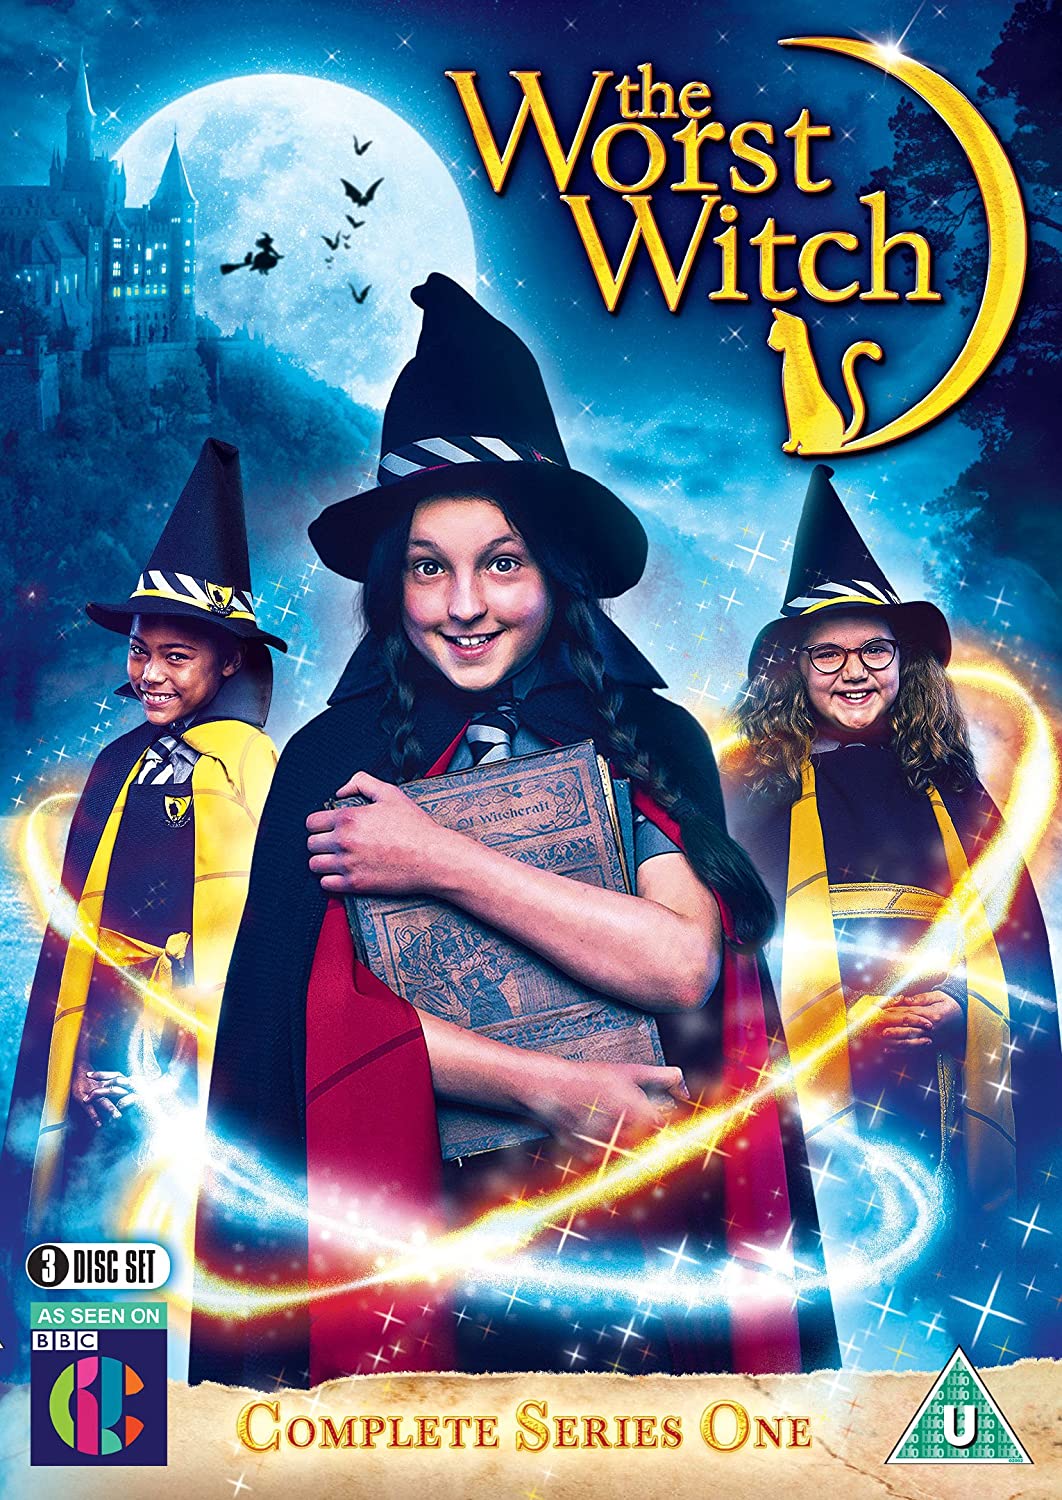 ดูหนังออนไลน์ฟรี The Worst Witch Season 3 (2019) โอมเพี้ยง! แม่มดน้อยสู้ตาย ซีซั่น 3 ตอนที่ 9